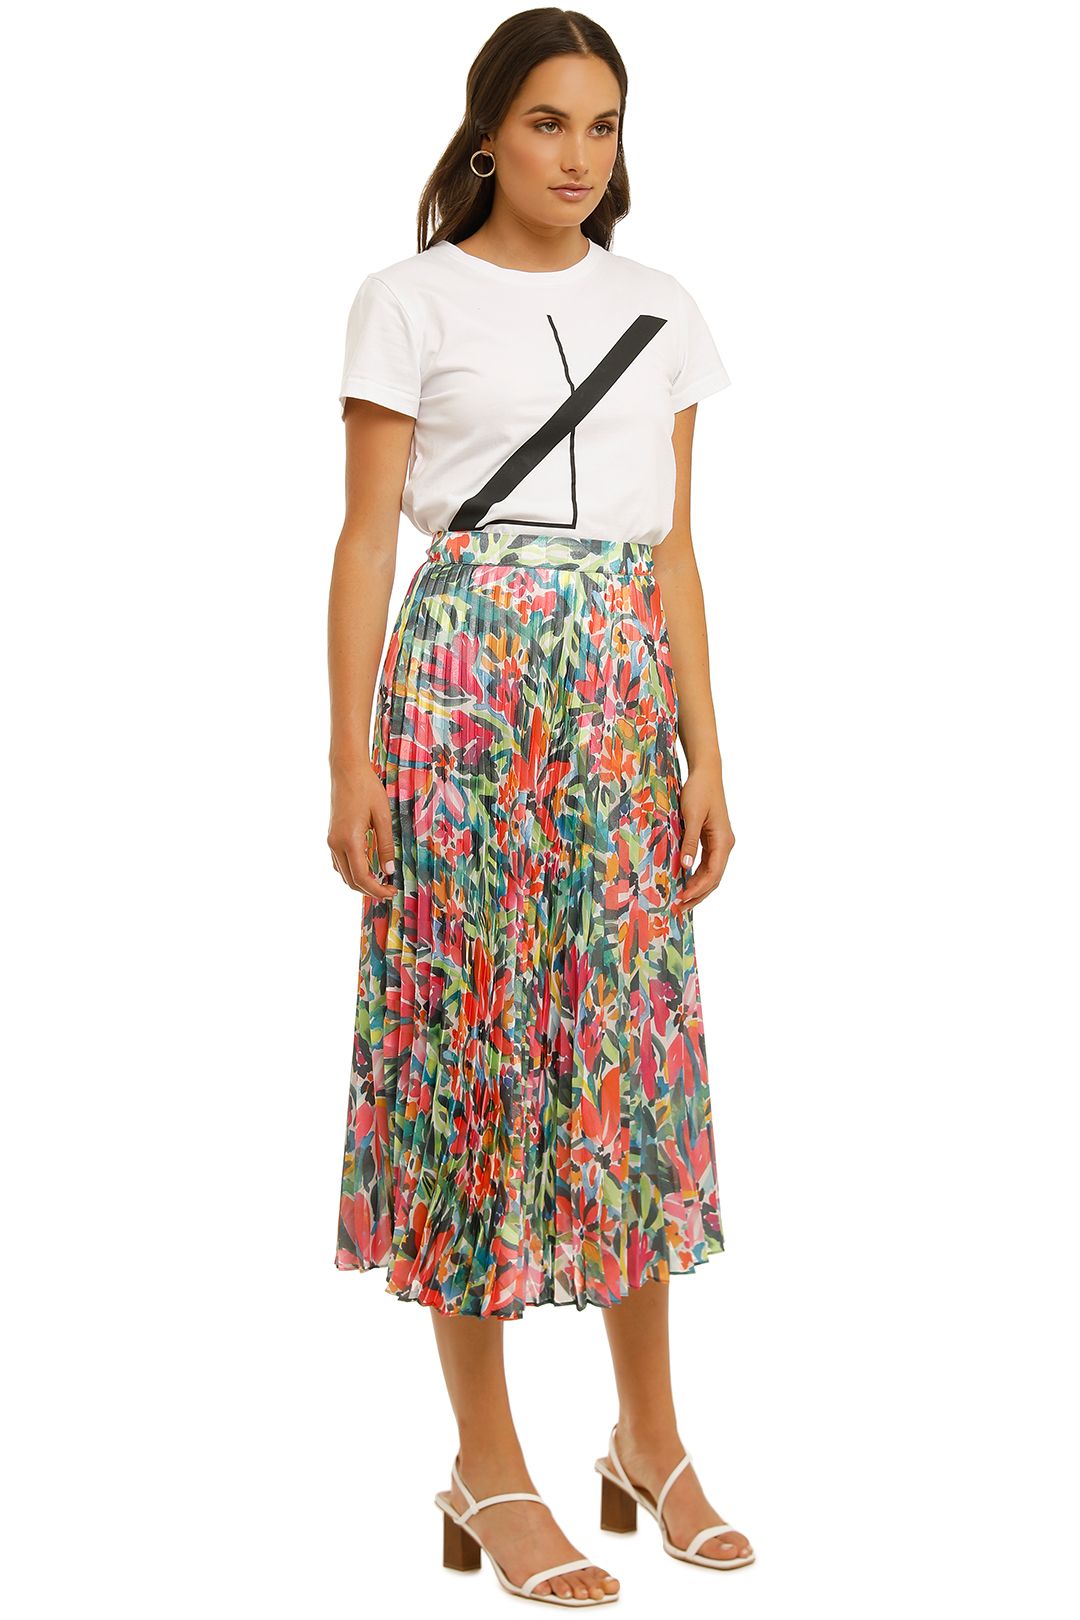 Cooper-St-Spirited-Pleated-Skirt-Print-Light-Side